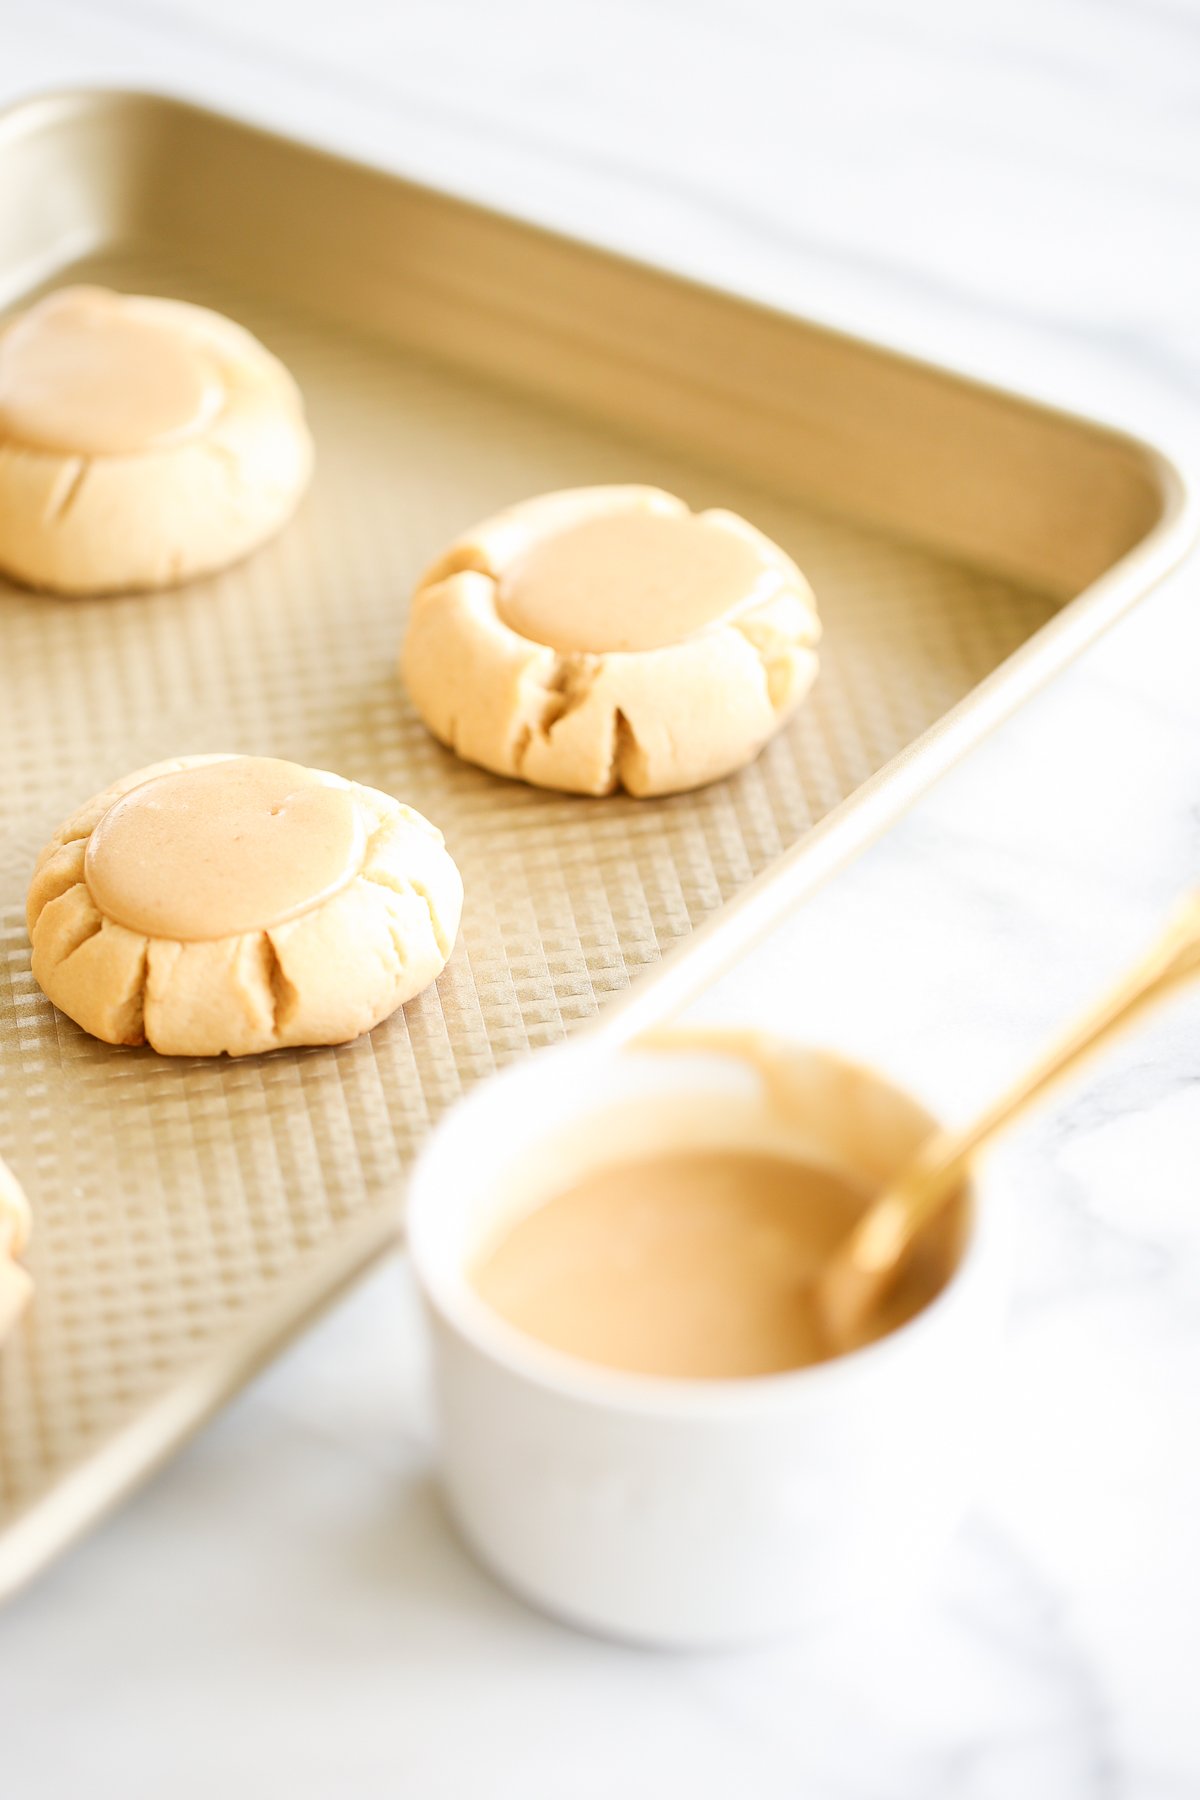 Caramel peanut butter cookies on a baking sheet.